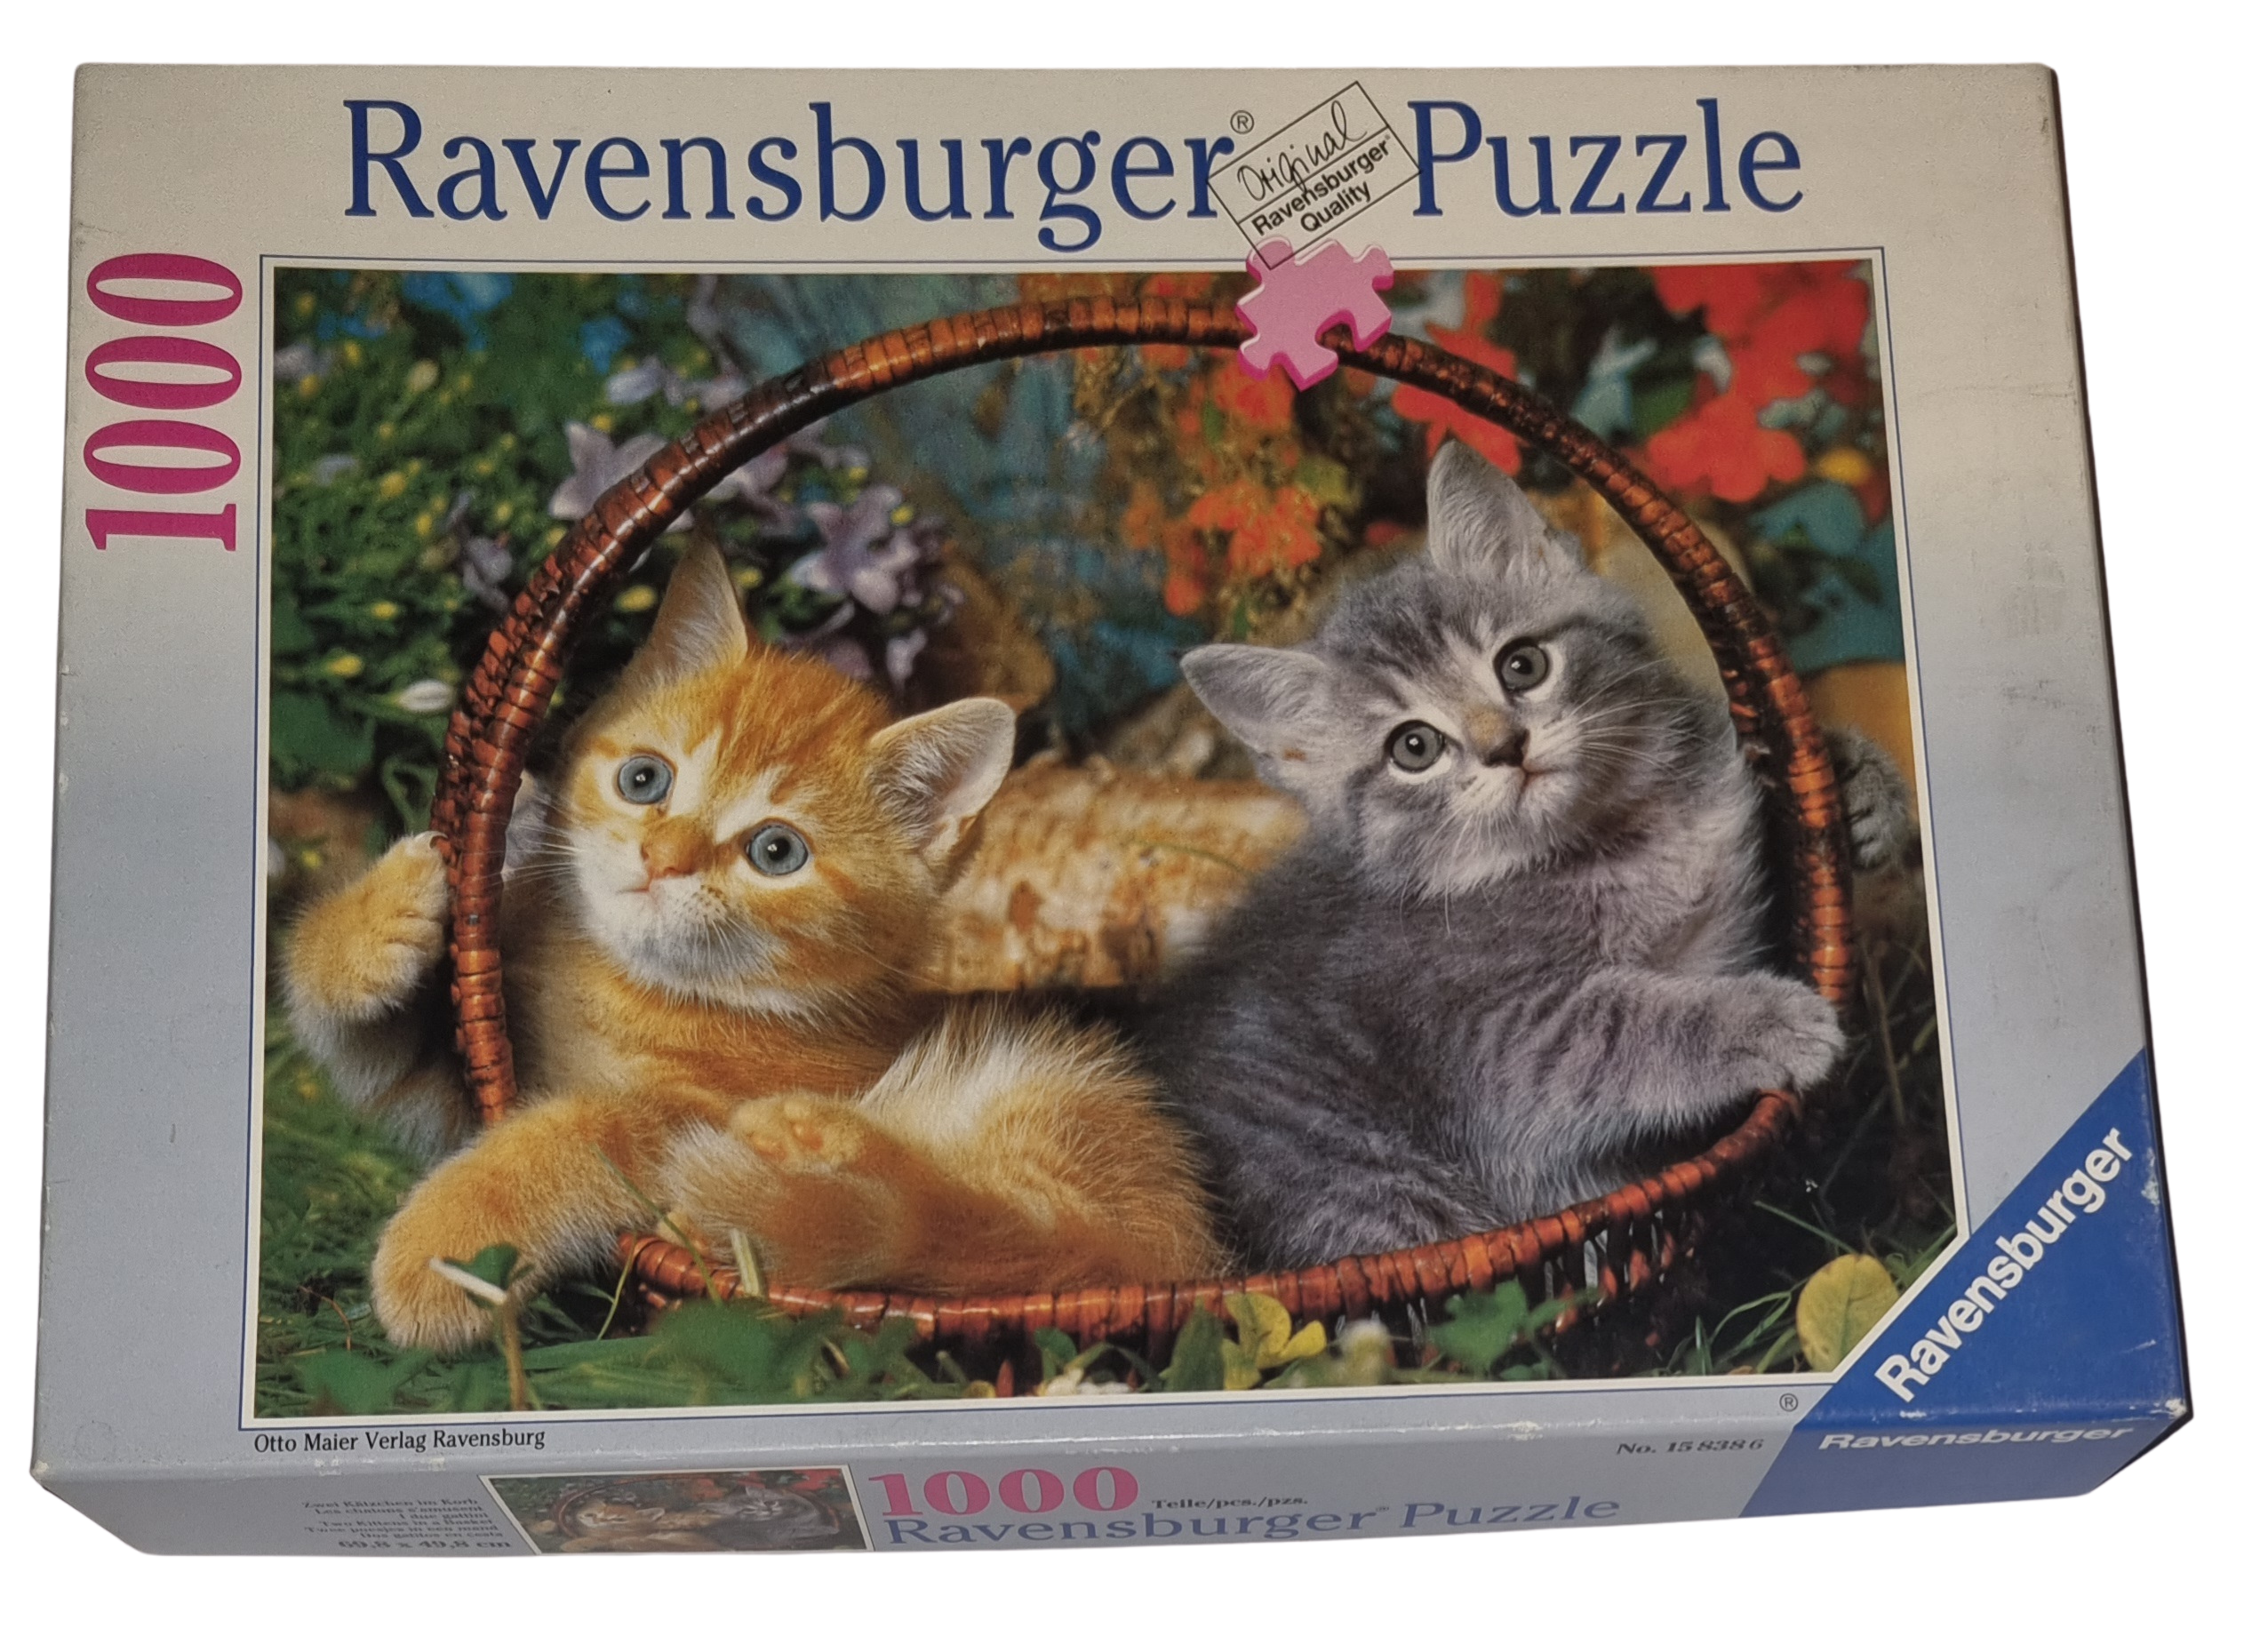 Ravensburger Puzzle 1000 Teile 158386 Zwei Kätzchen im Korb